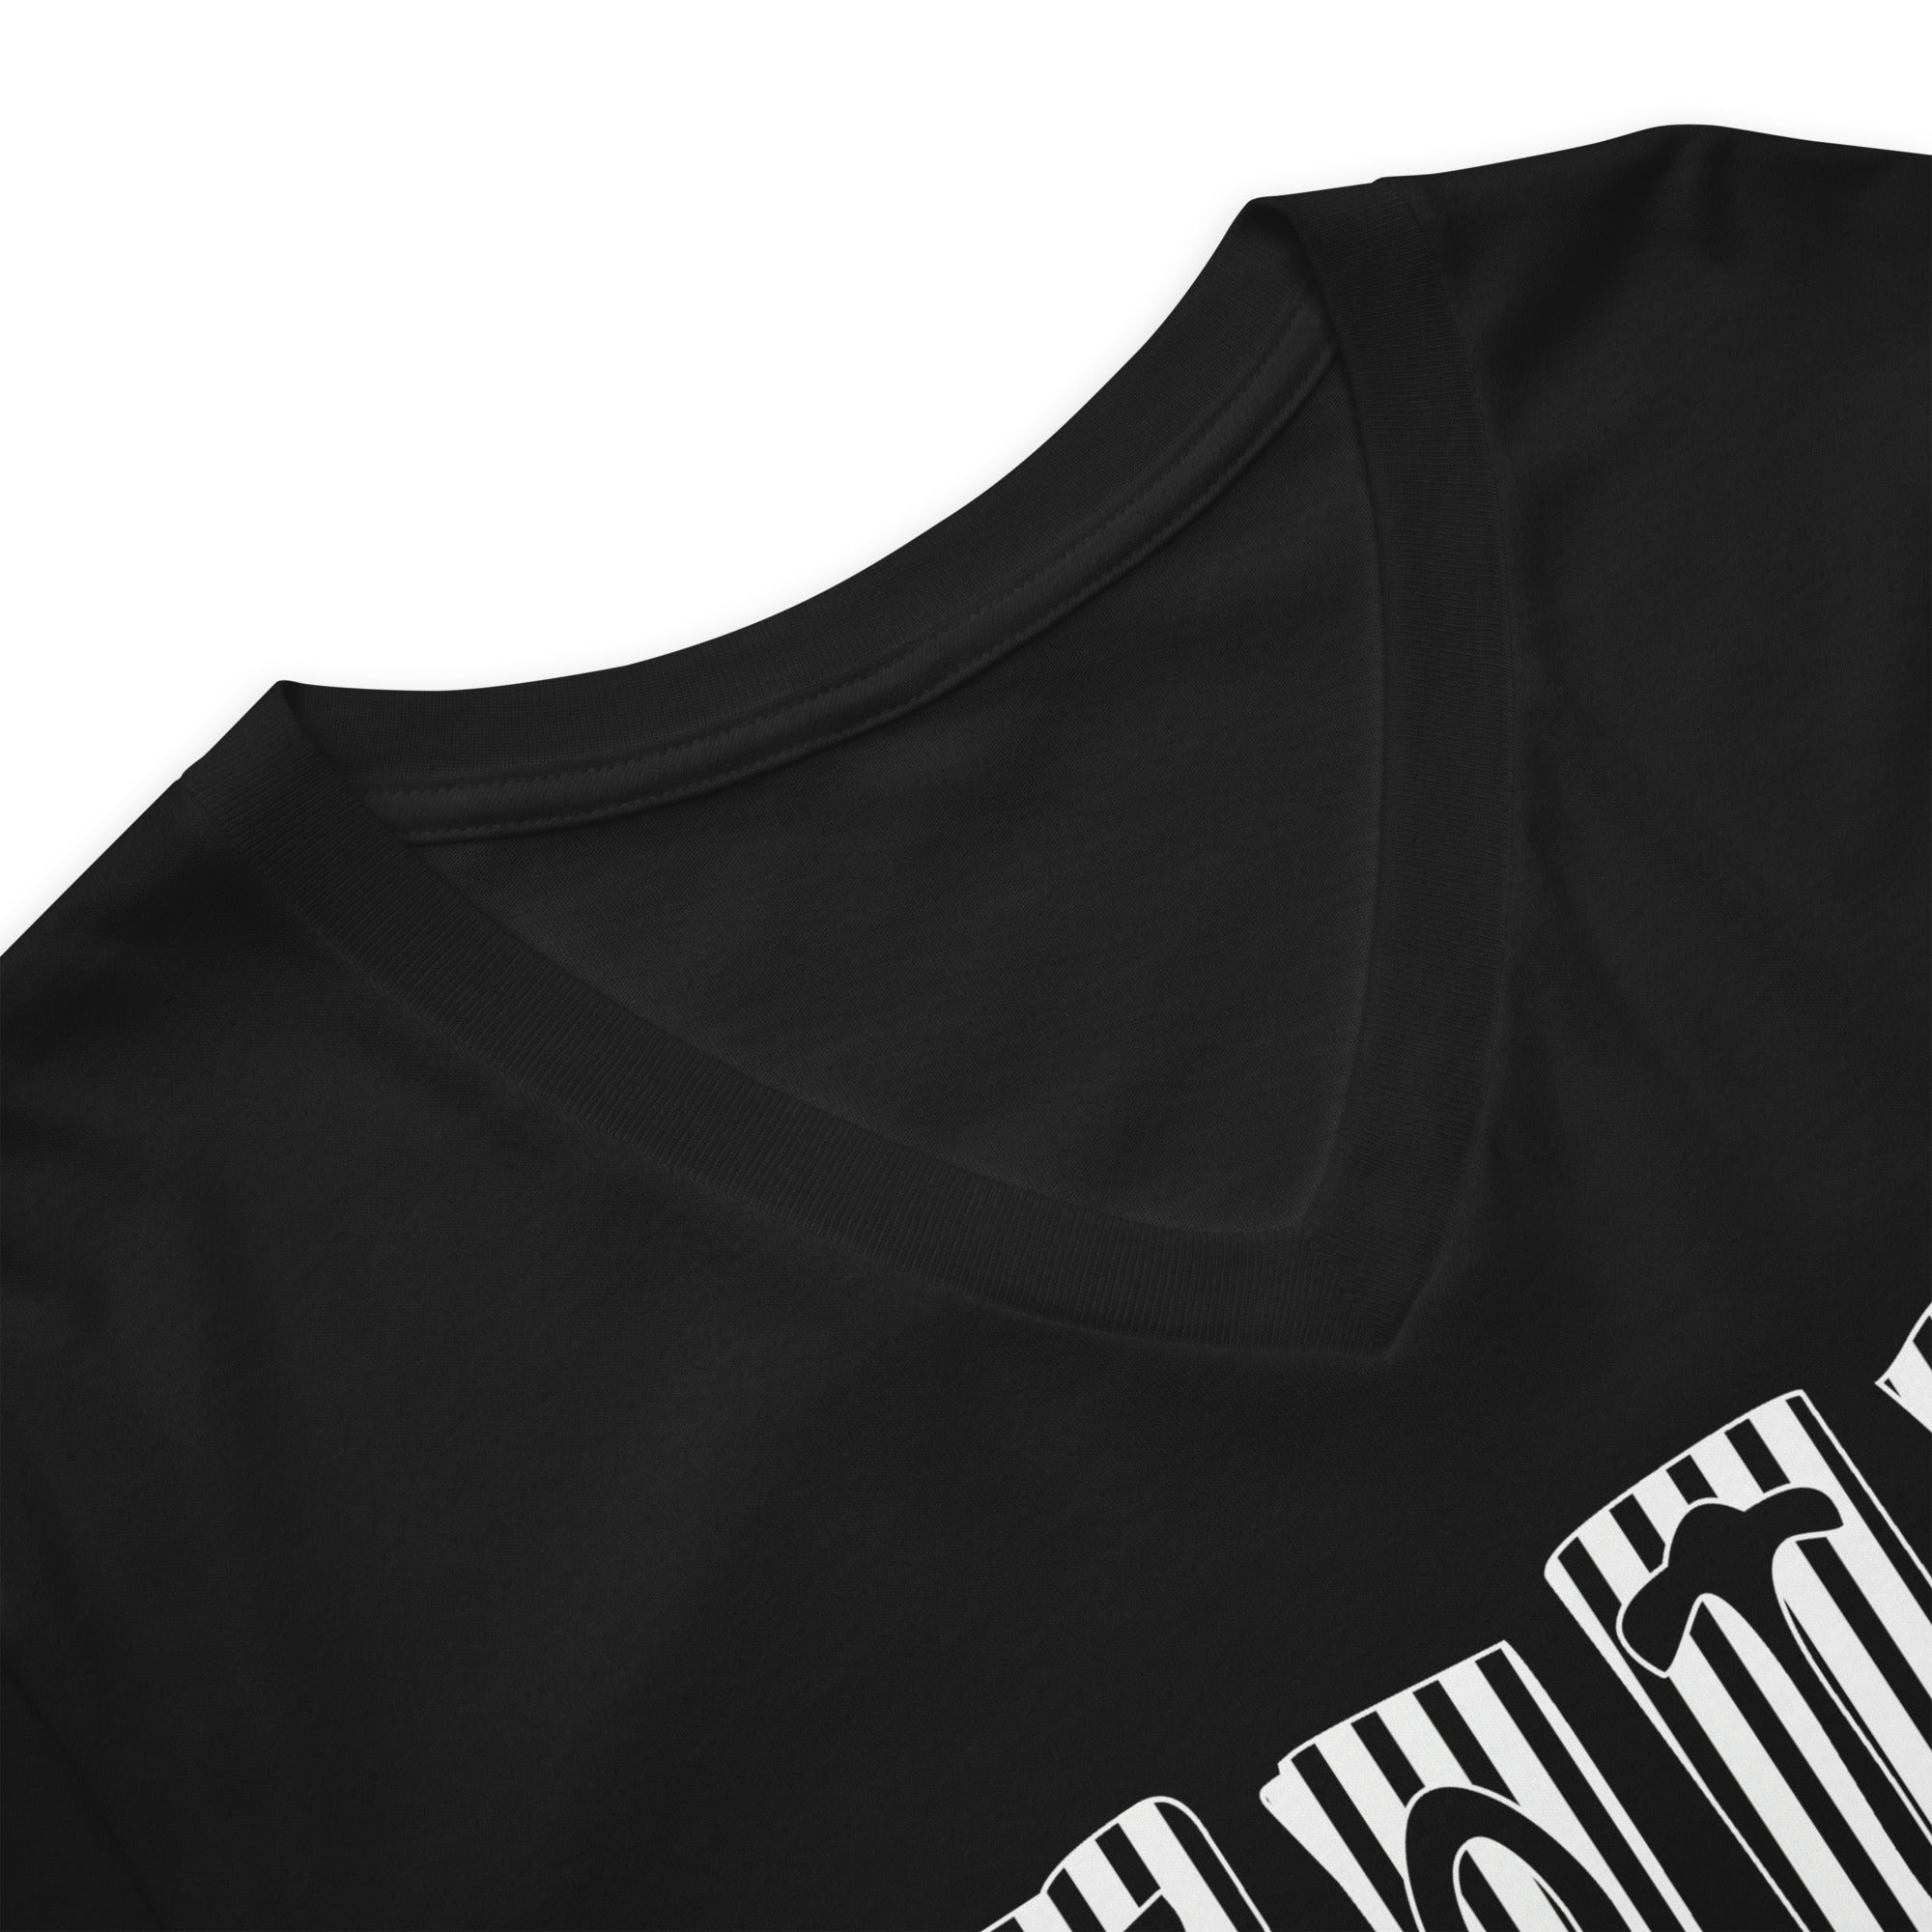 Black and White Vertical Stripe Goth Wallpaper Style Women’s Short Sleeve V-Neck T-Shirt